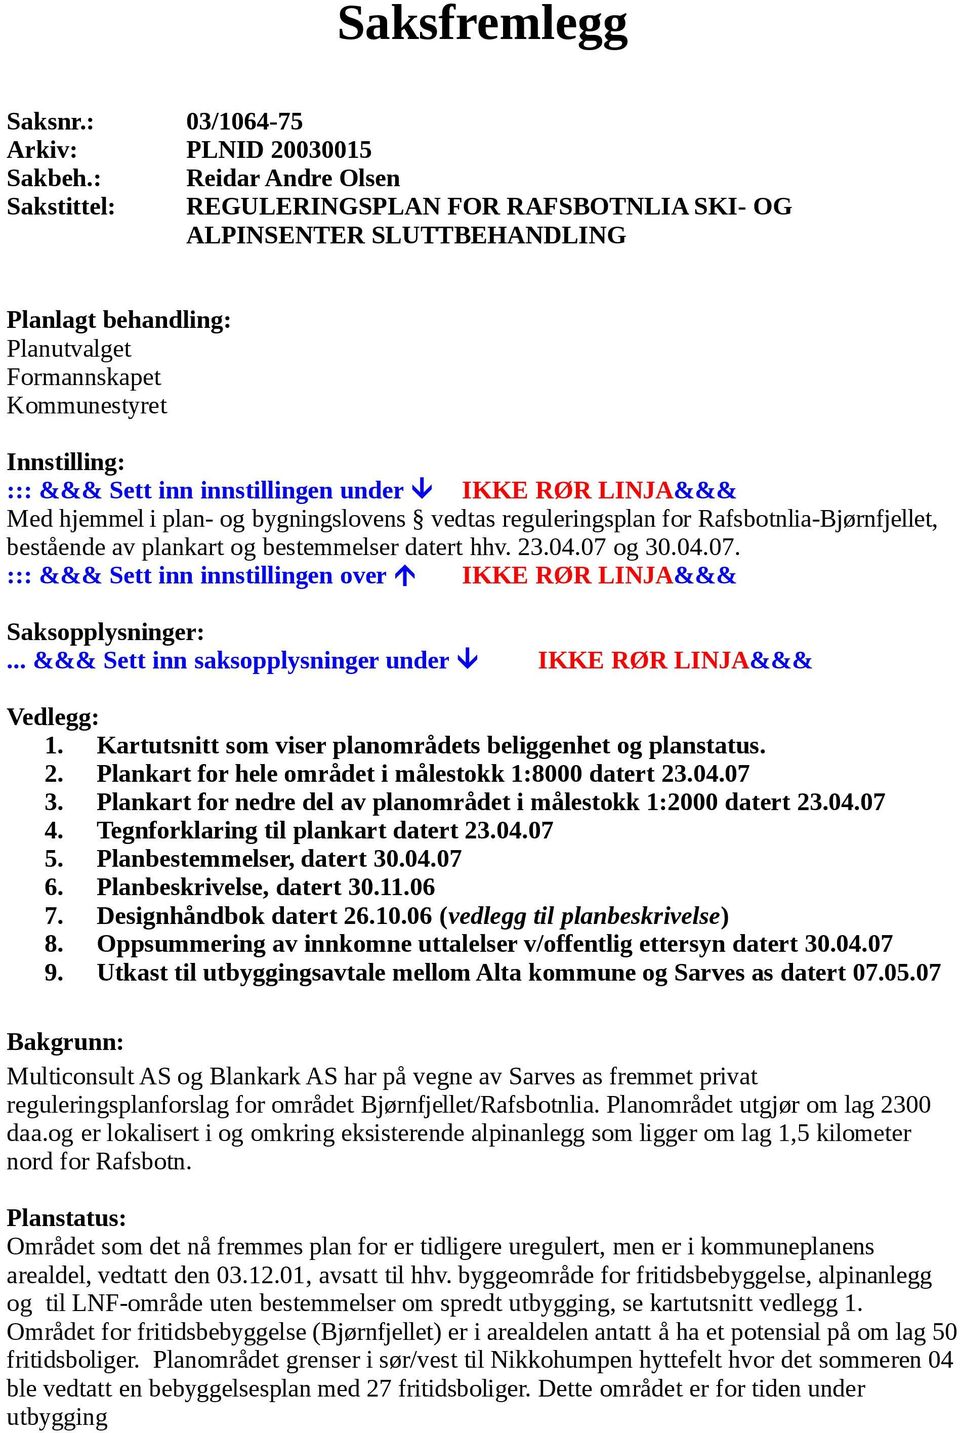 innstillingen under IKKE RØR LINJA&&& Med hjemmel i plan- og bygningslovens vedtas reguleringsplan for Rafsbotnlia-Bjørnfjellet, bestående av plankart og bestemmelser datert hhv. 23.04.07 